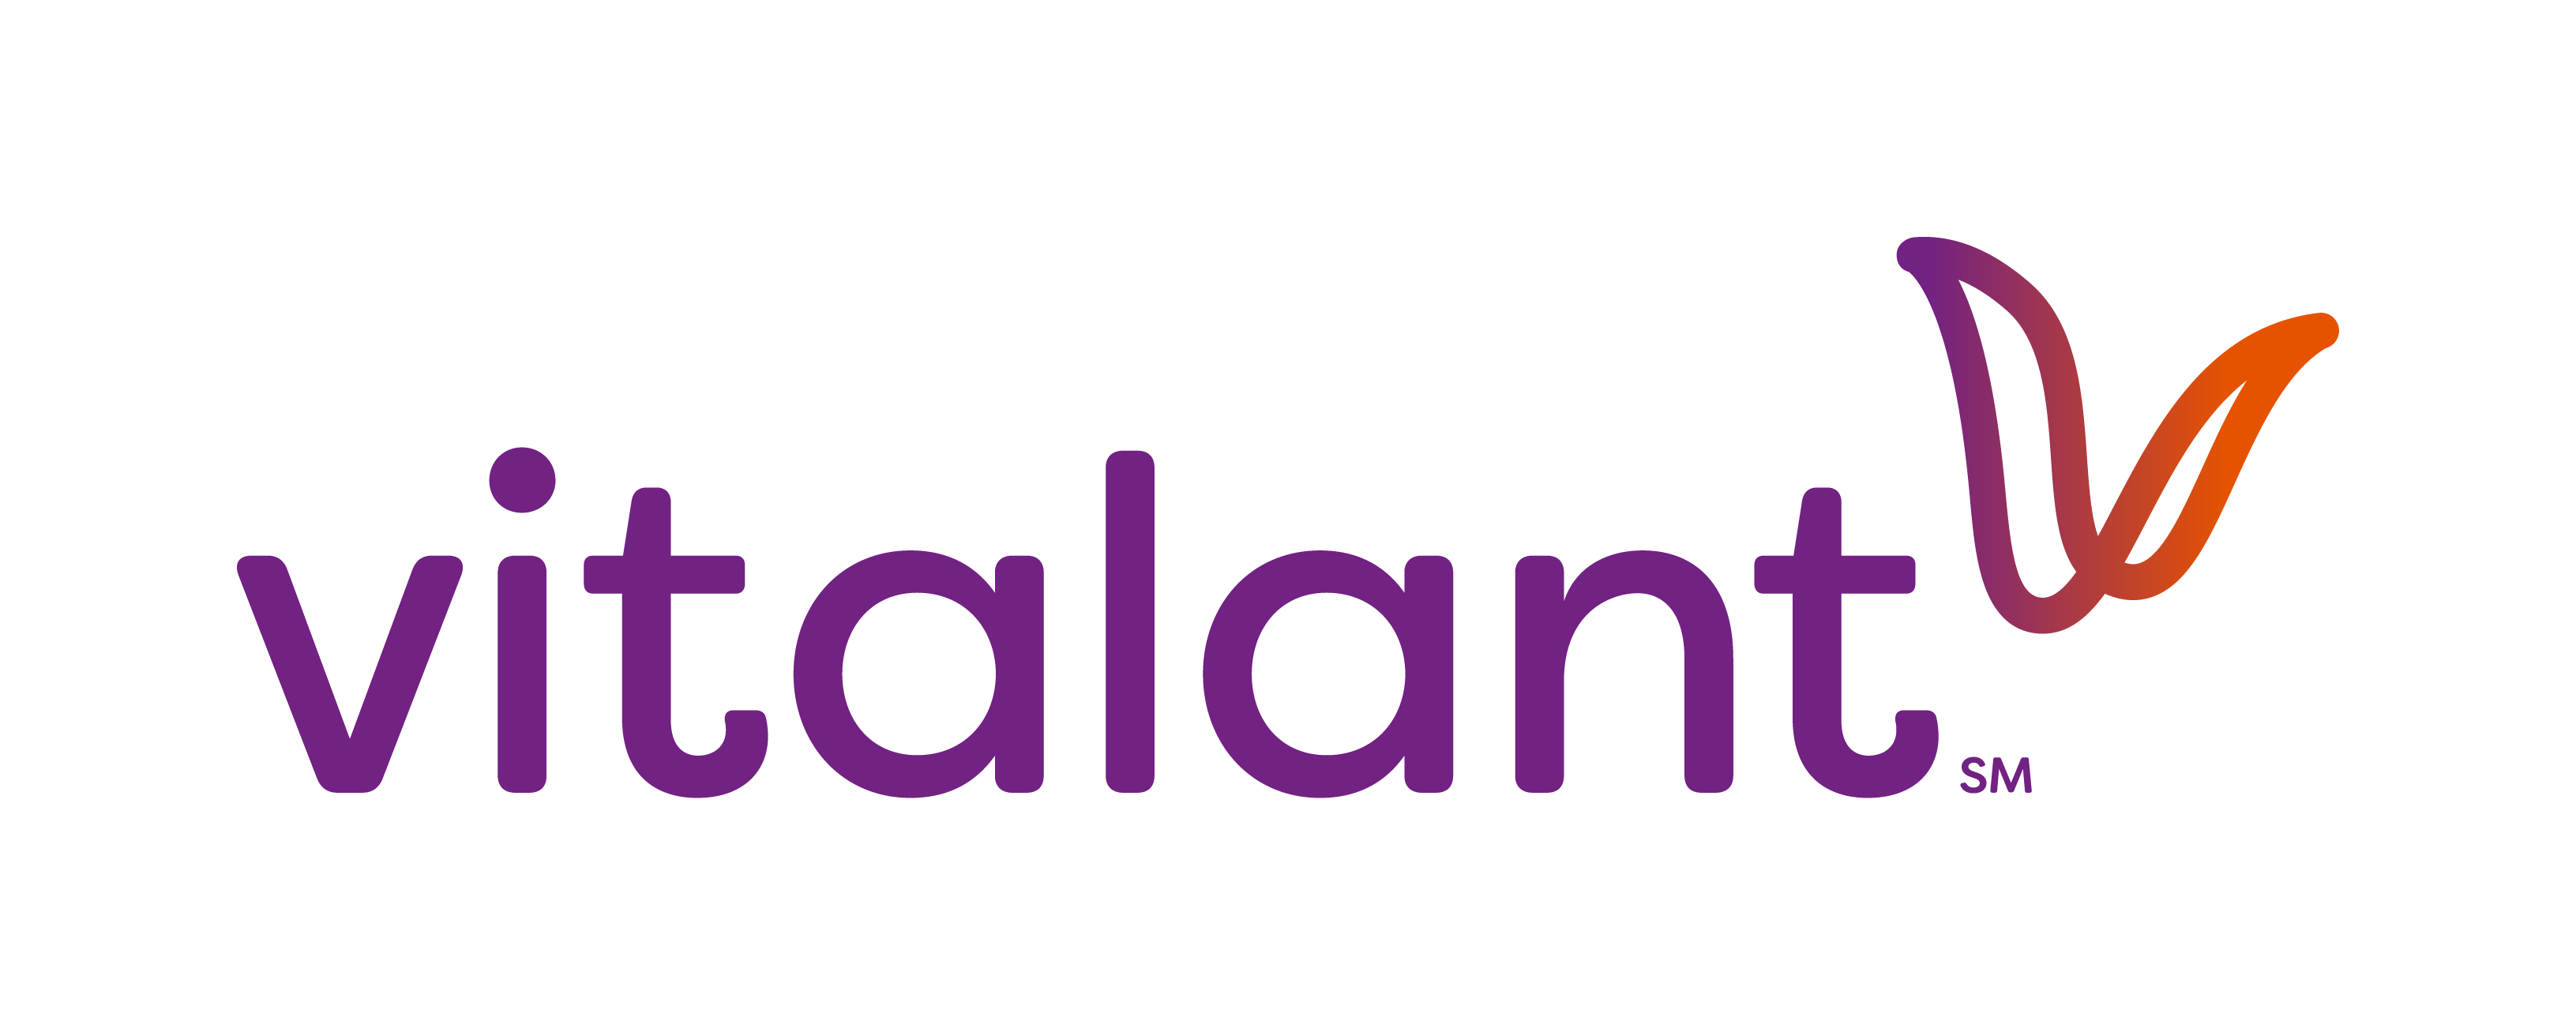 Vitalant logo